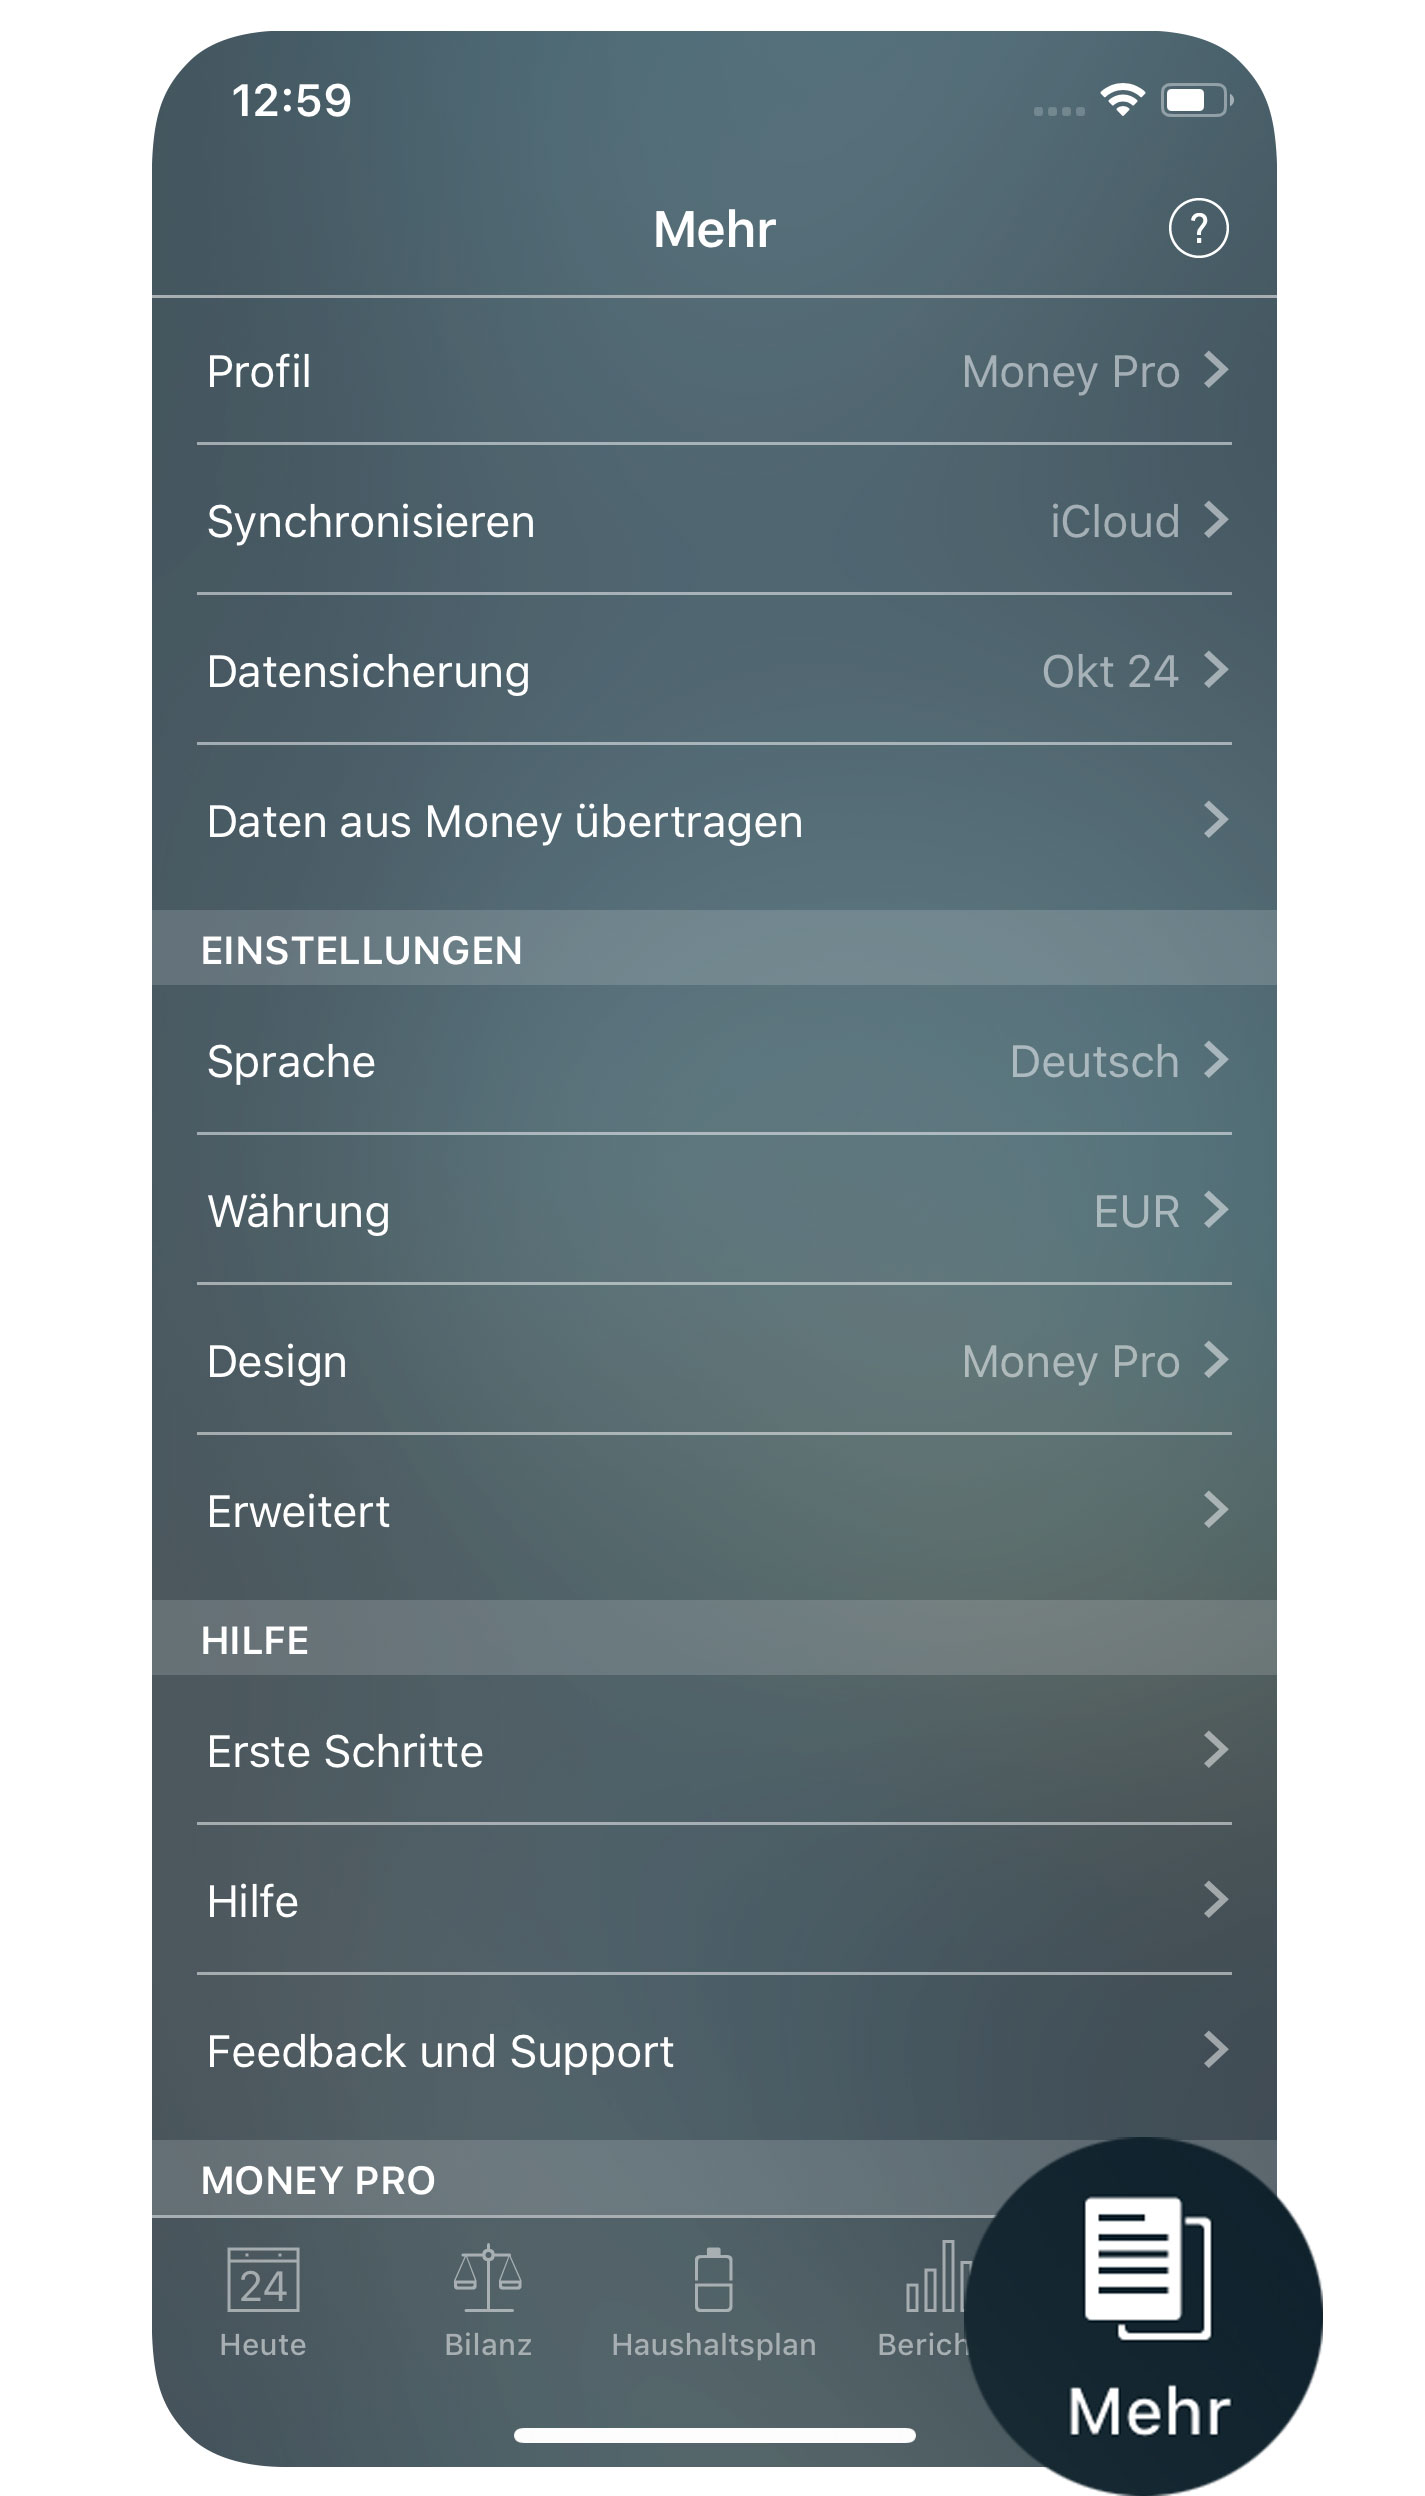 Money Pro - Mehr (Sicherungsdatei, Profile, Synchronisierung) - iPhone